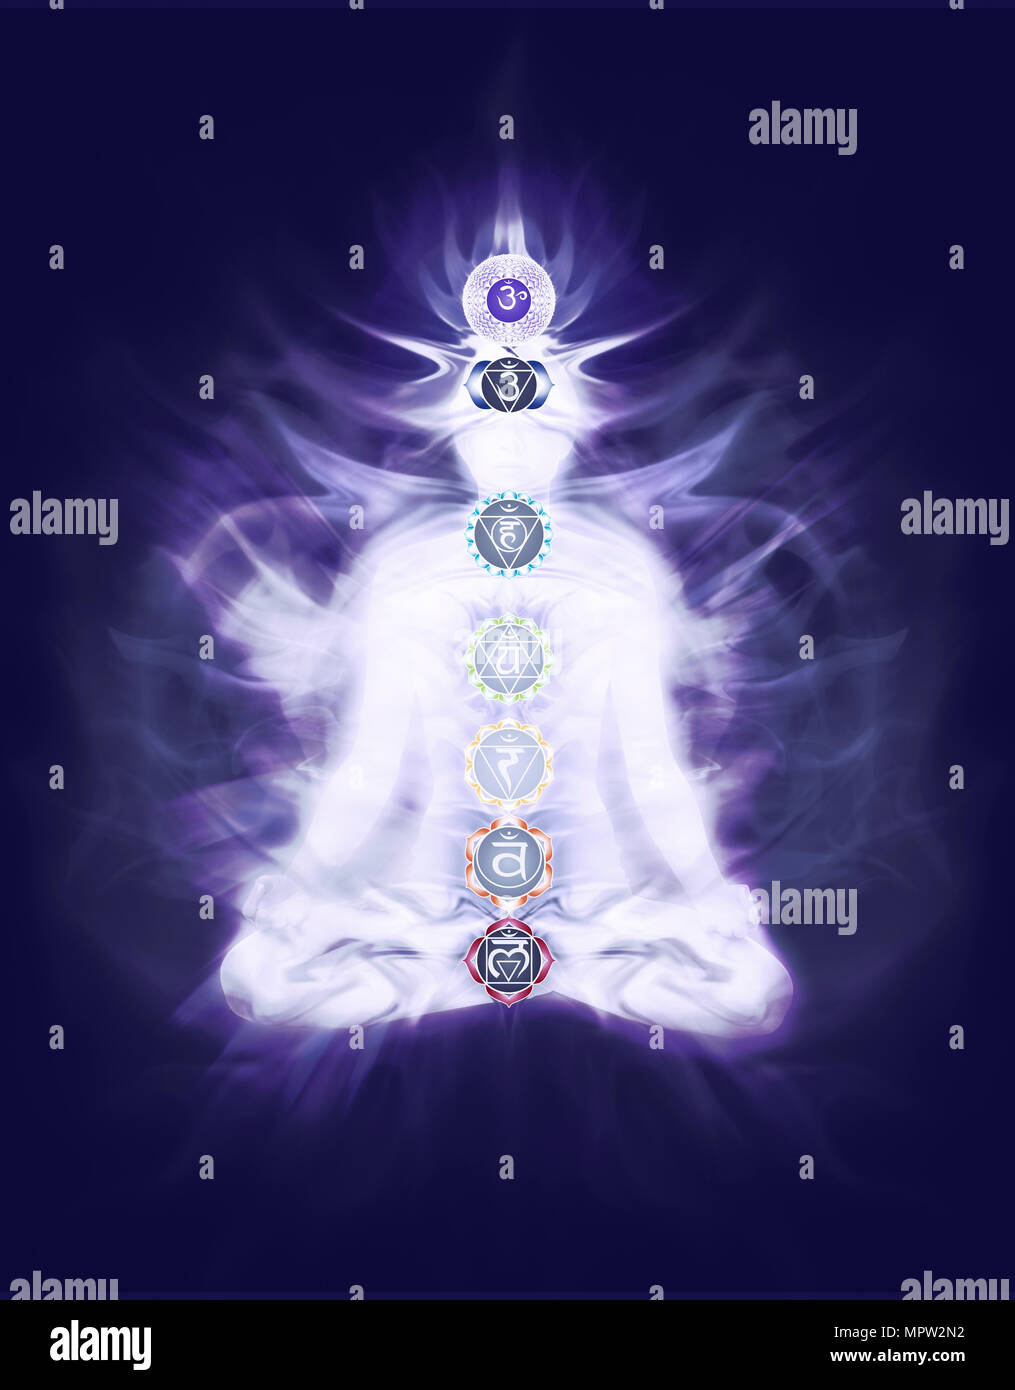 Frau Sitzt Im Lotussitz Yoga Meditation Mit Farbigen Chakra Symbole Und Die Qi Energie Auf Den Korper Auf Dark Navy Blau Lila Farbe Uberlagert B Stockfotografie Alamy